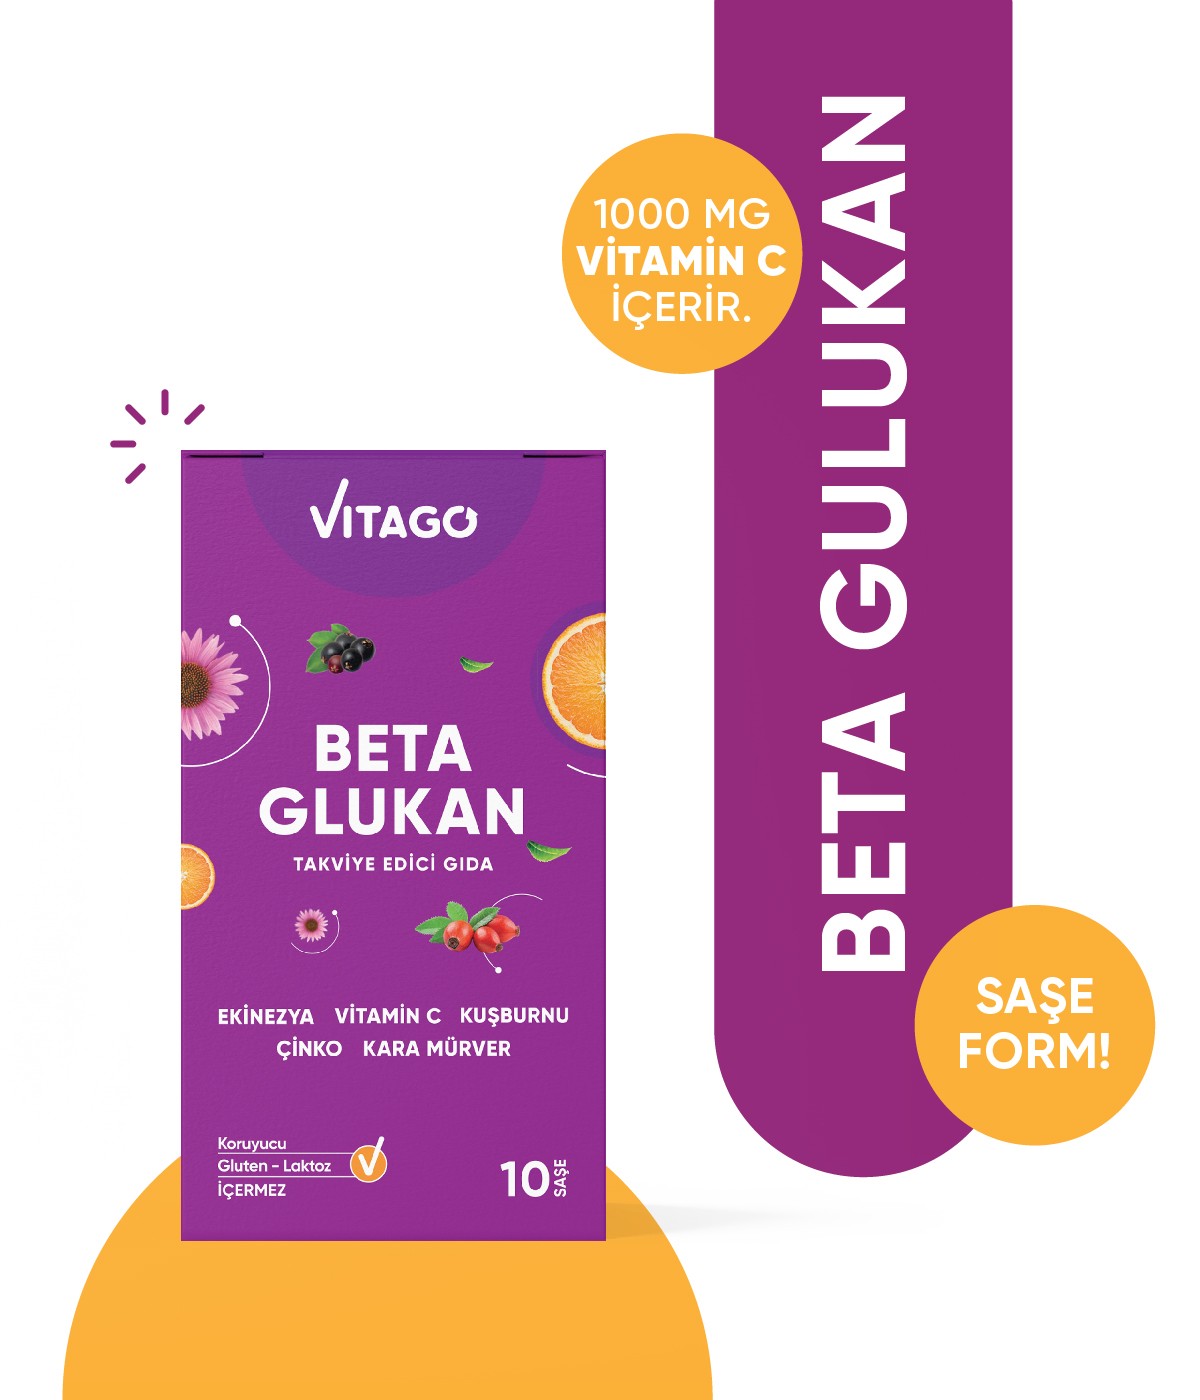 Vitago Beta Glukan, Vitamin C, Karamürver İçeren Effervesan Toz Takviye Edici Gıda